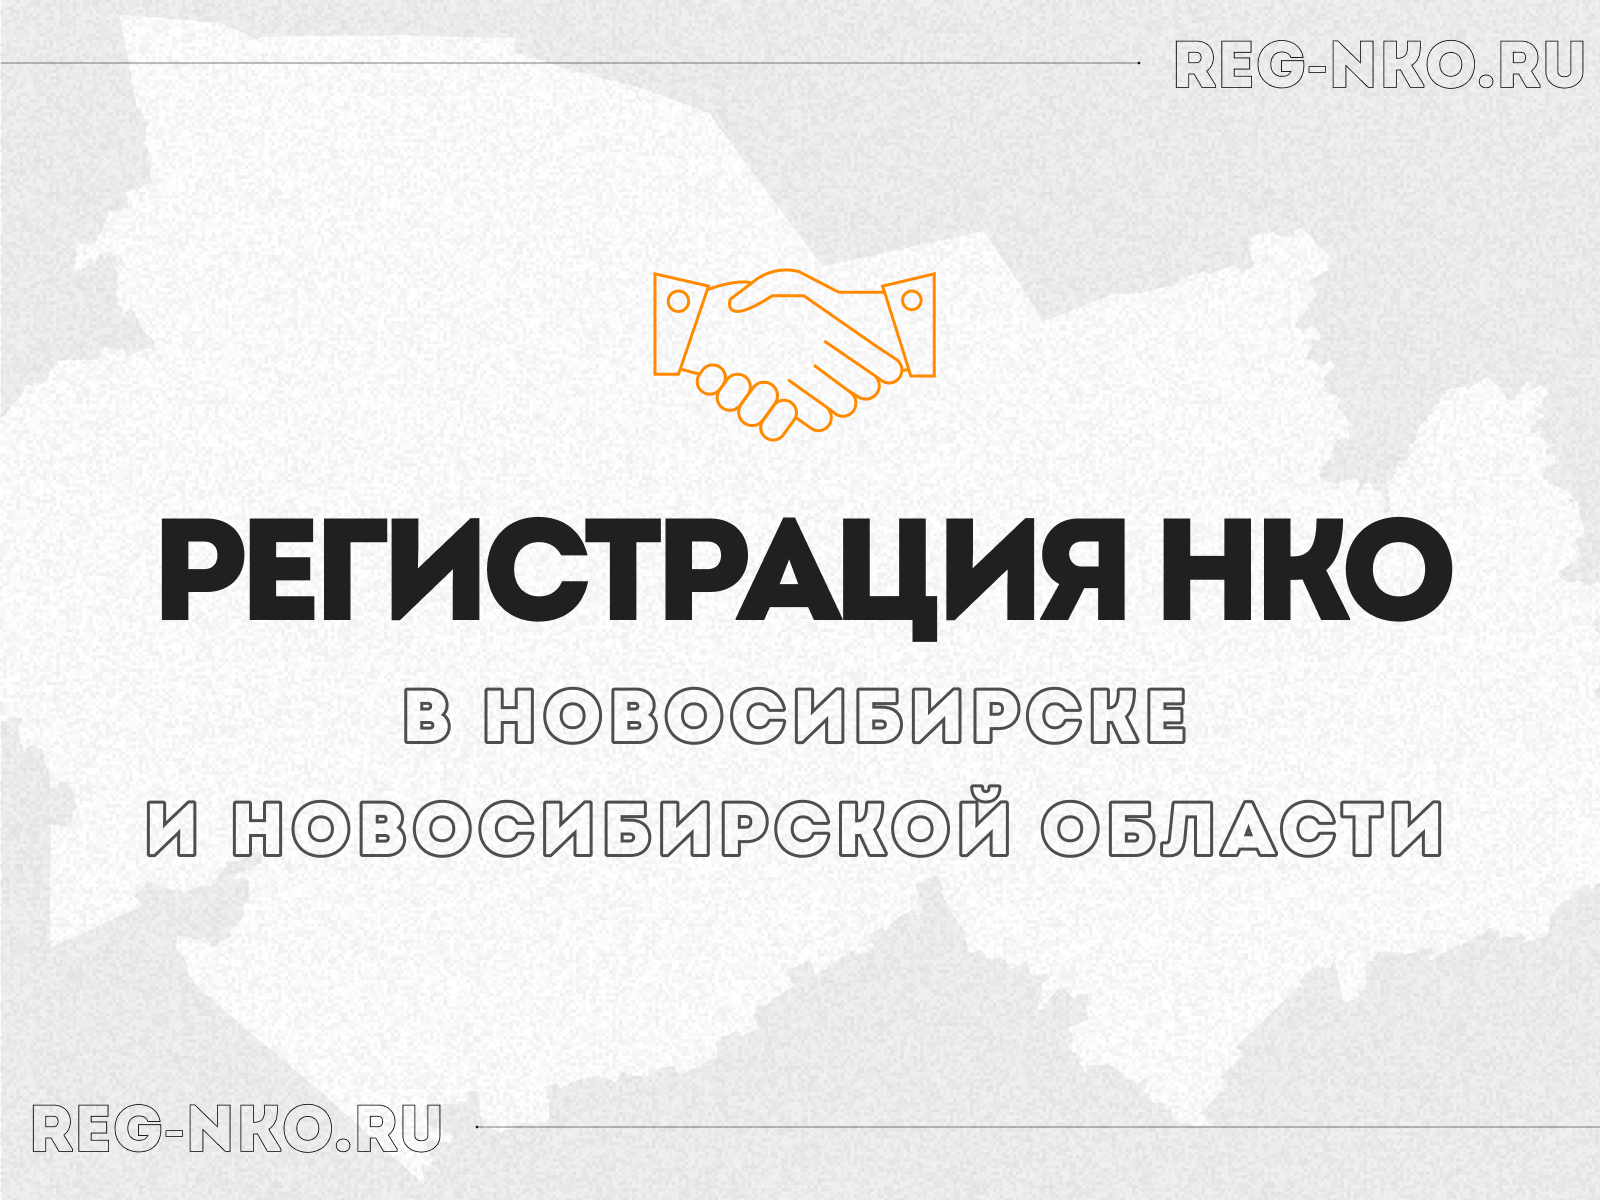 Регистрация НКО в Новосибирске и Новосибирской области